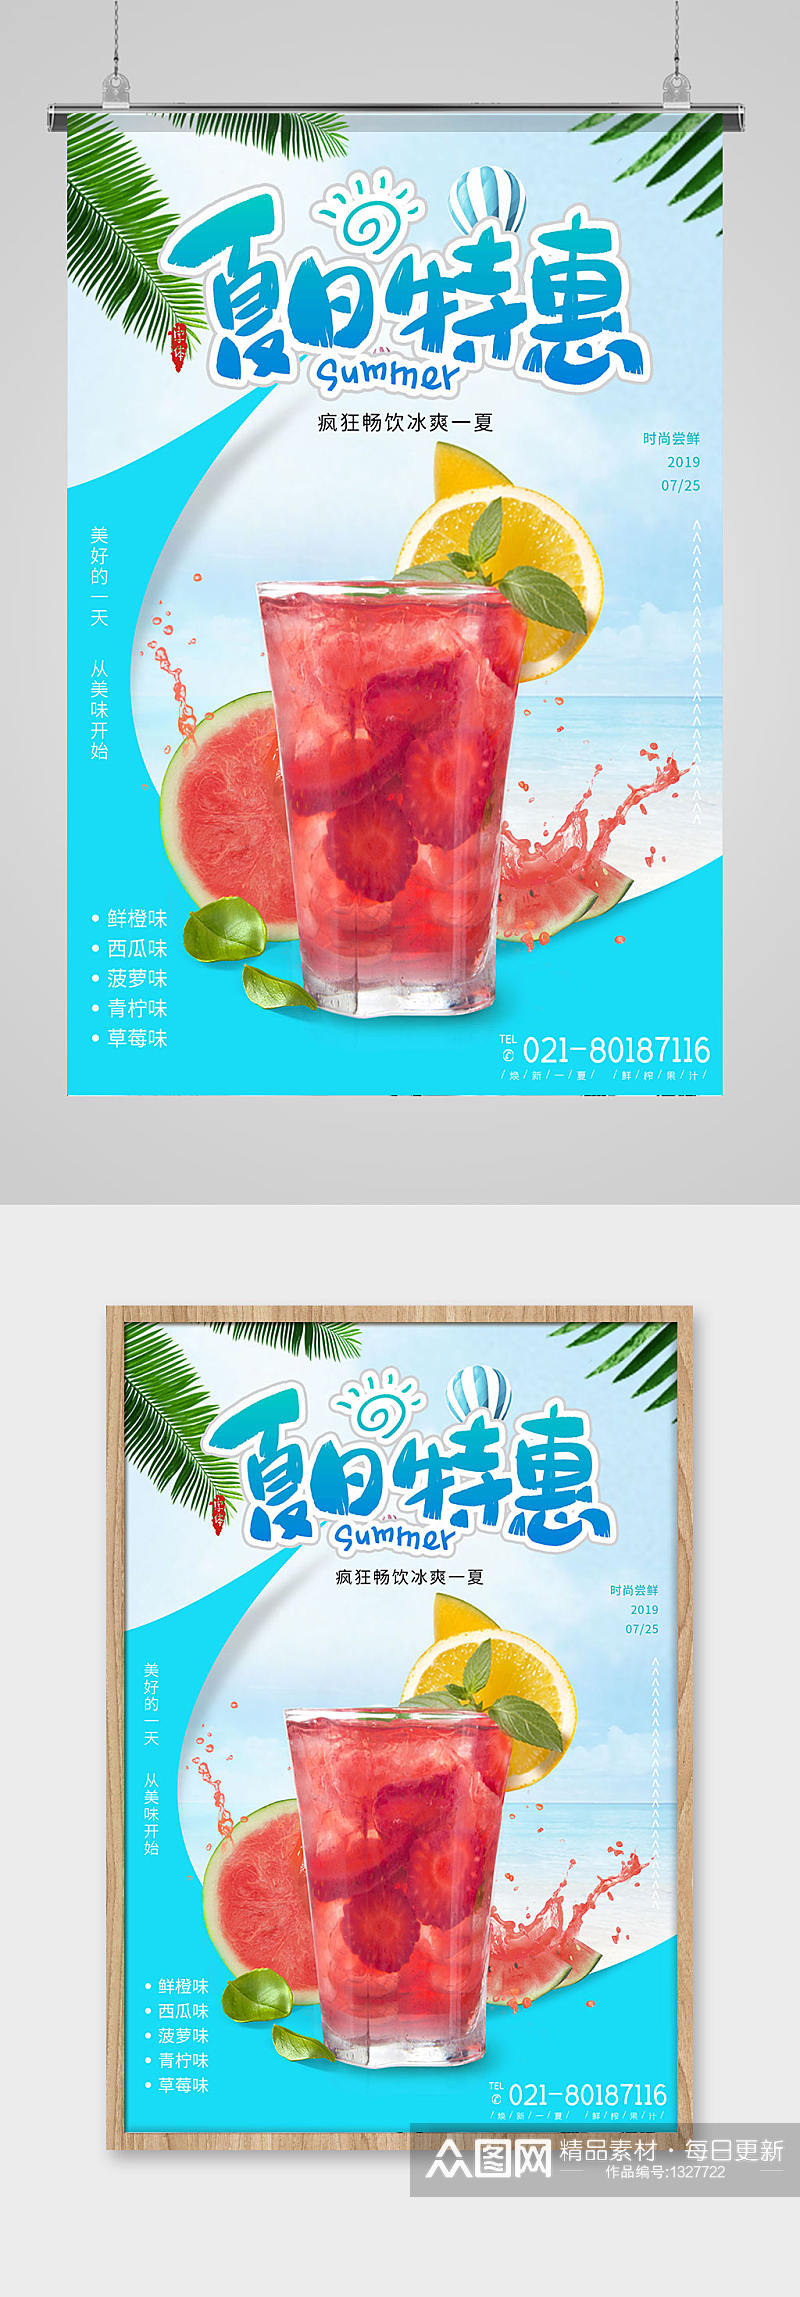 夏日特惠果汁饮品促销宣传海报素材